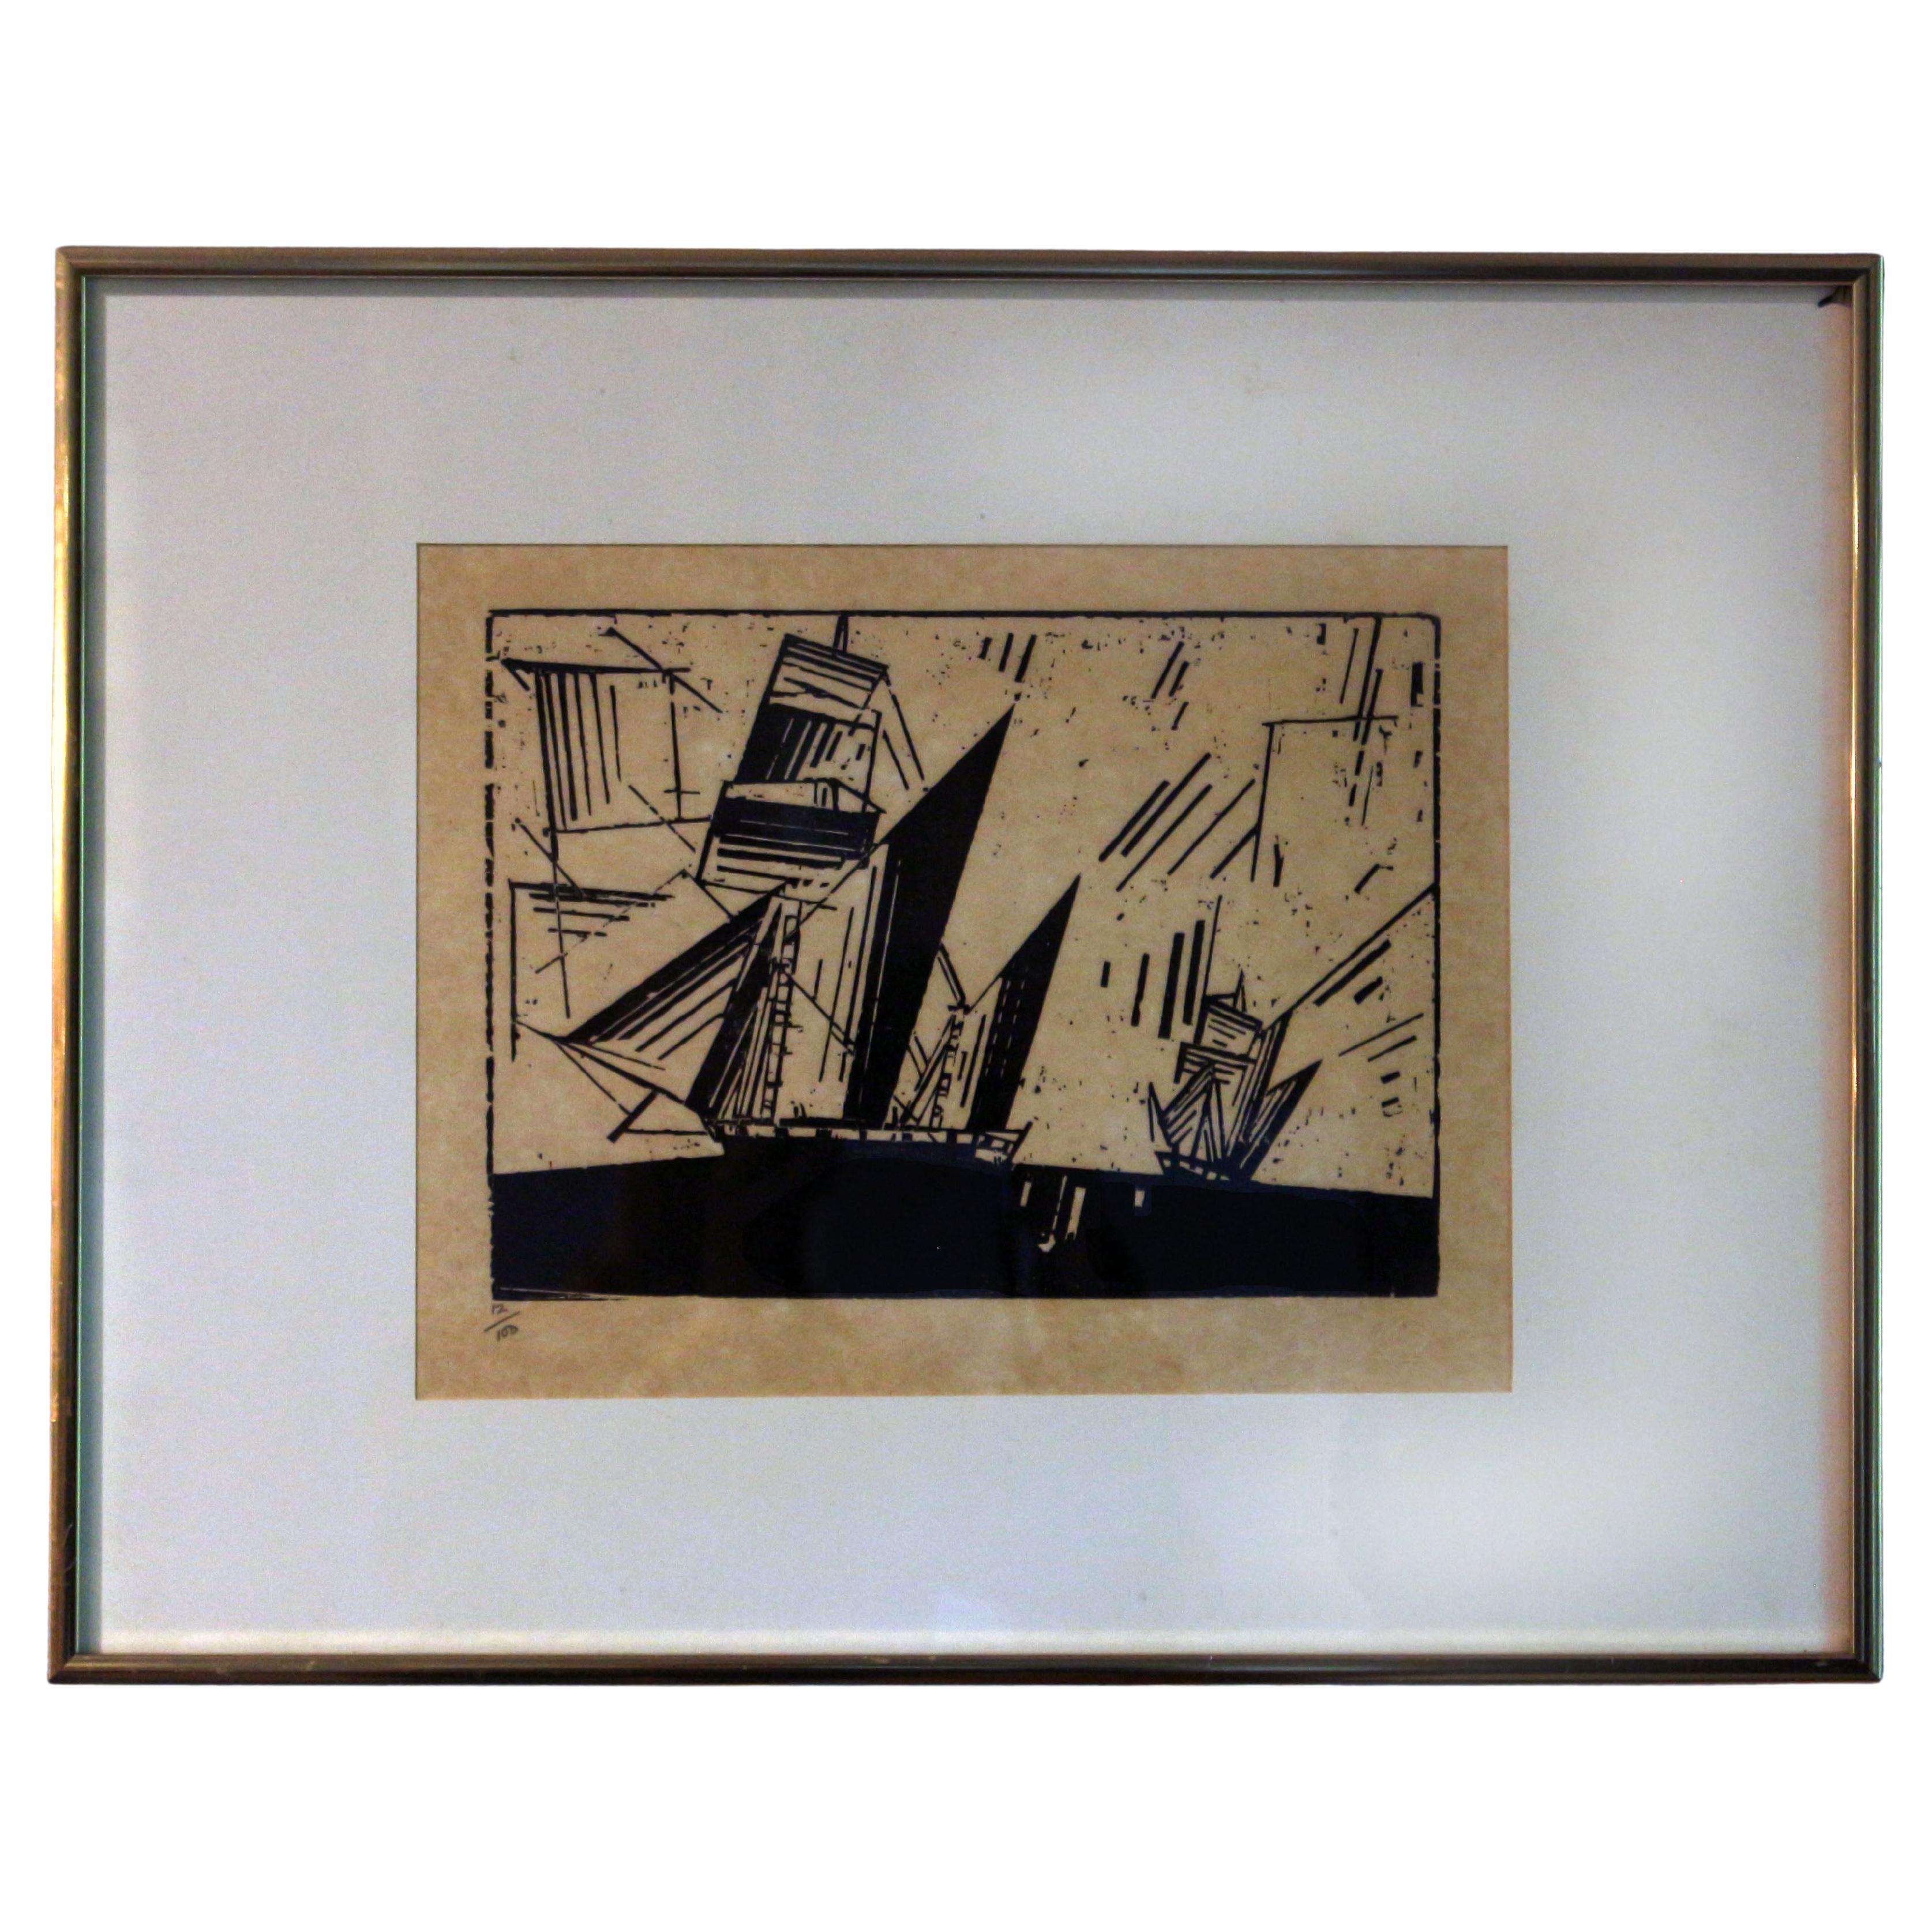 Impression sur bois « Topsail Ketches » de Lyonel Feininger, 1964